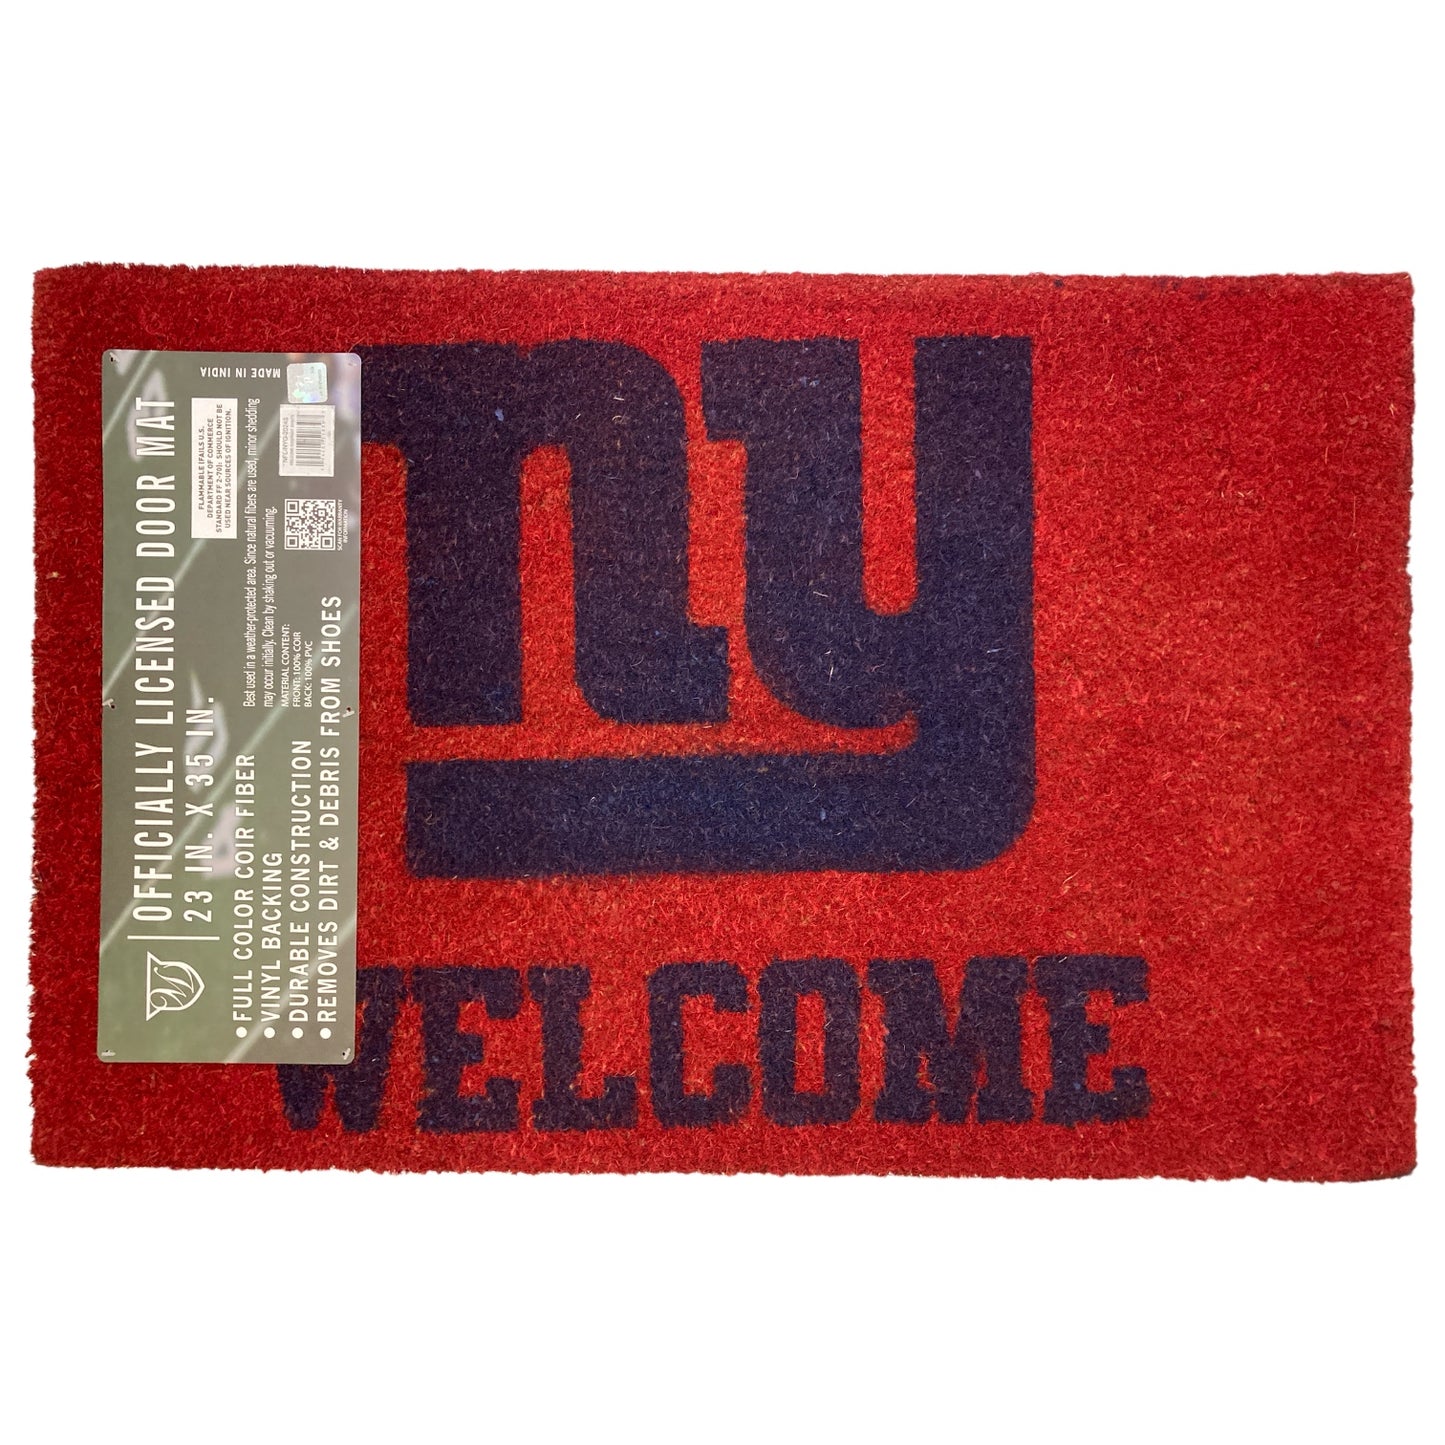 Officially Licensed NFL Coir Fiber Welcome Door Mat, New York Giants 23"x35"